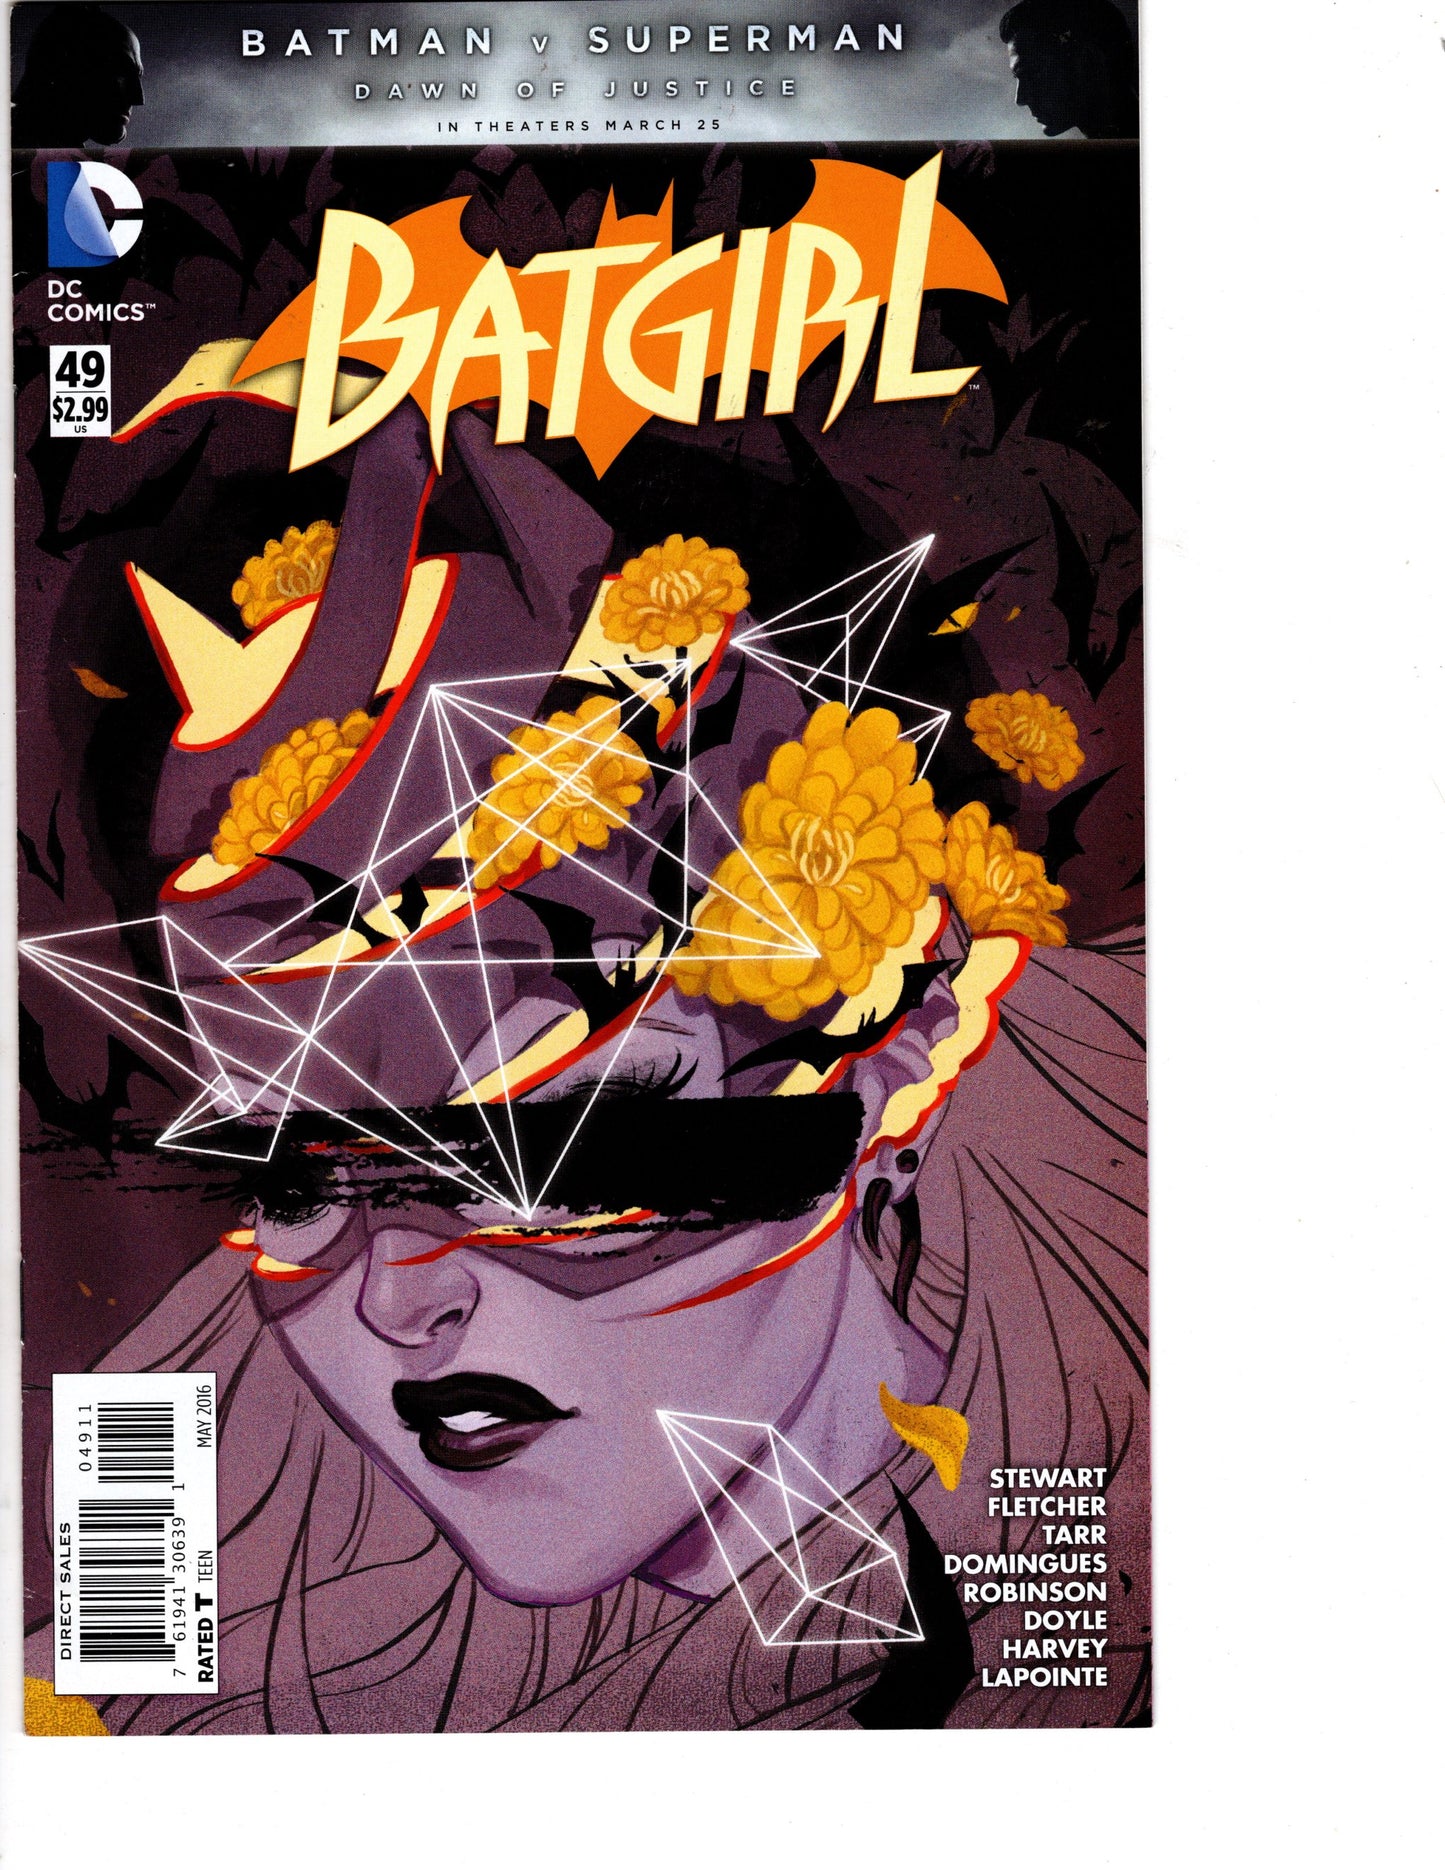 Batgirl #49